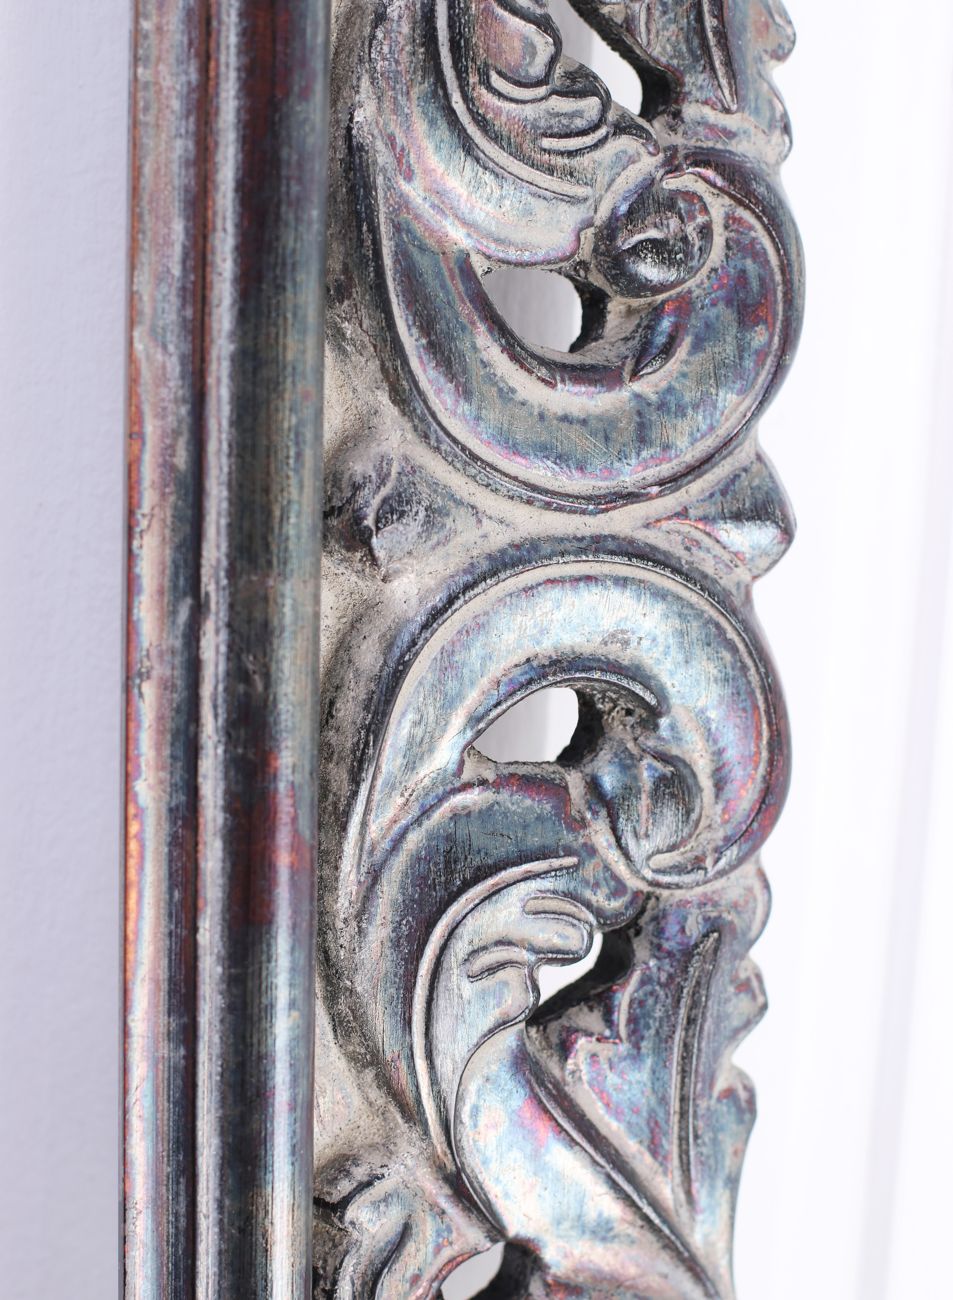 Oxidace pravého stříbra vytváří na rámu měnavé barevné přechody | © Frameit.cz